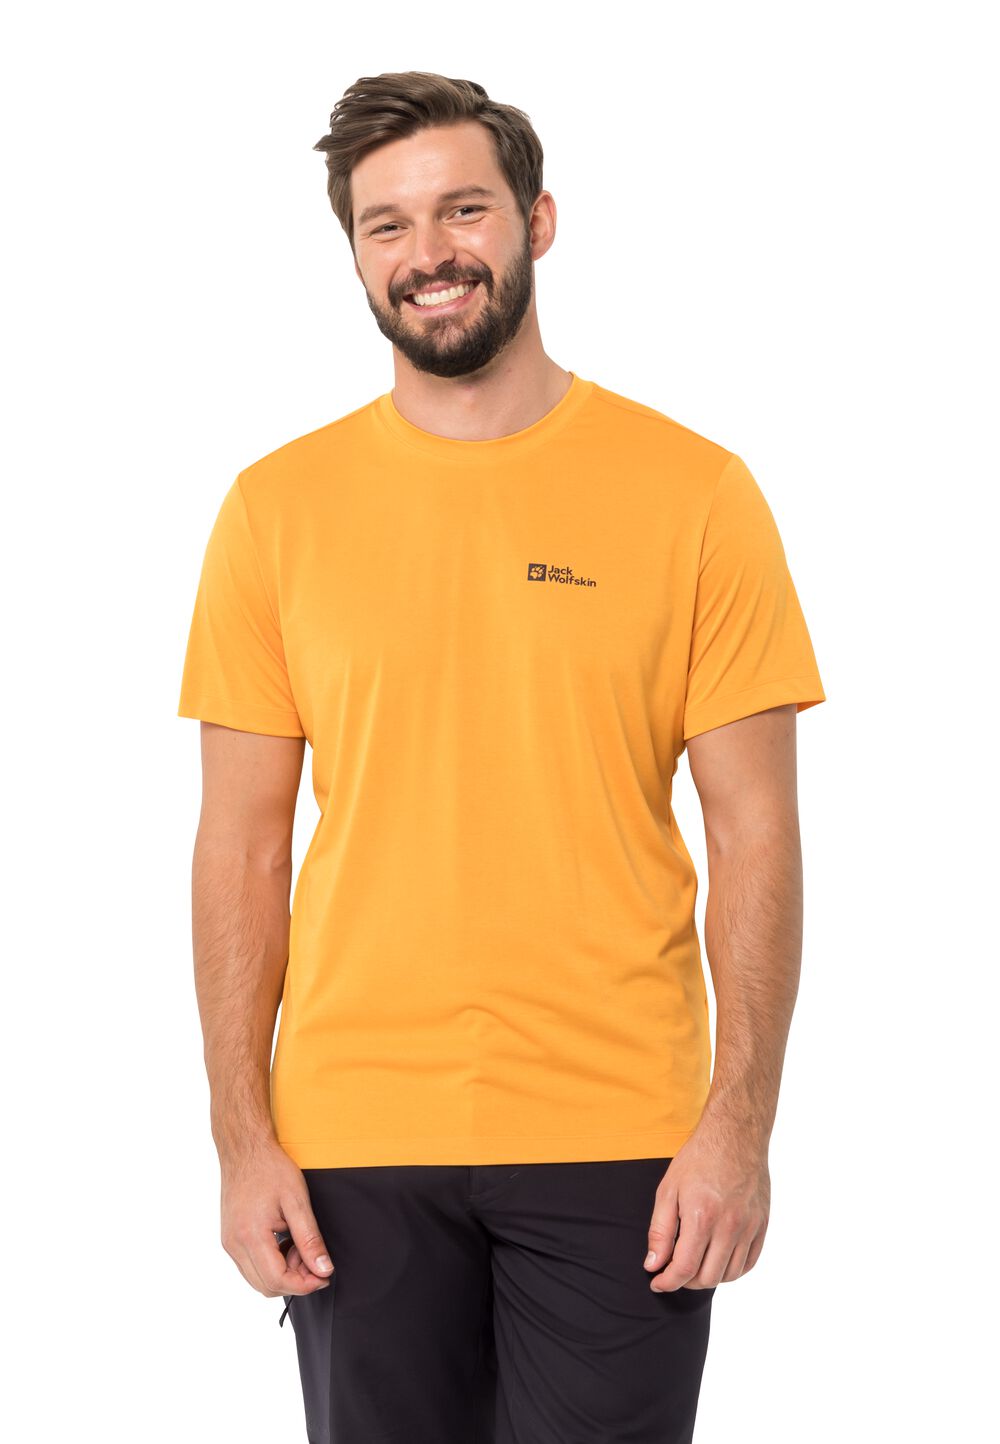 Jack Wolfskin Funktionsshirt Herren Hiking S/S Graphic T-Shirt Men XL braun orange pop von Jack Wolfskin